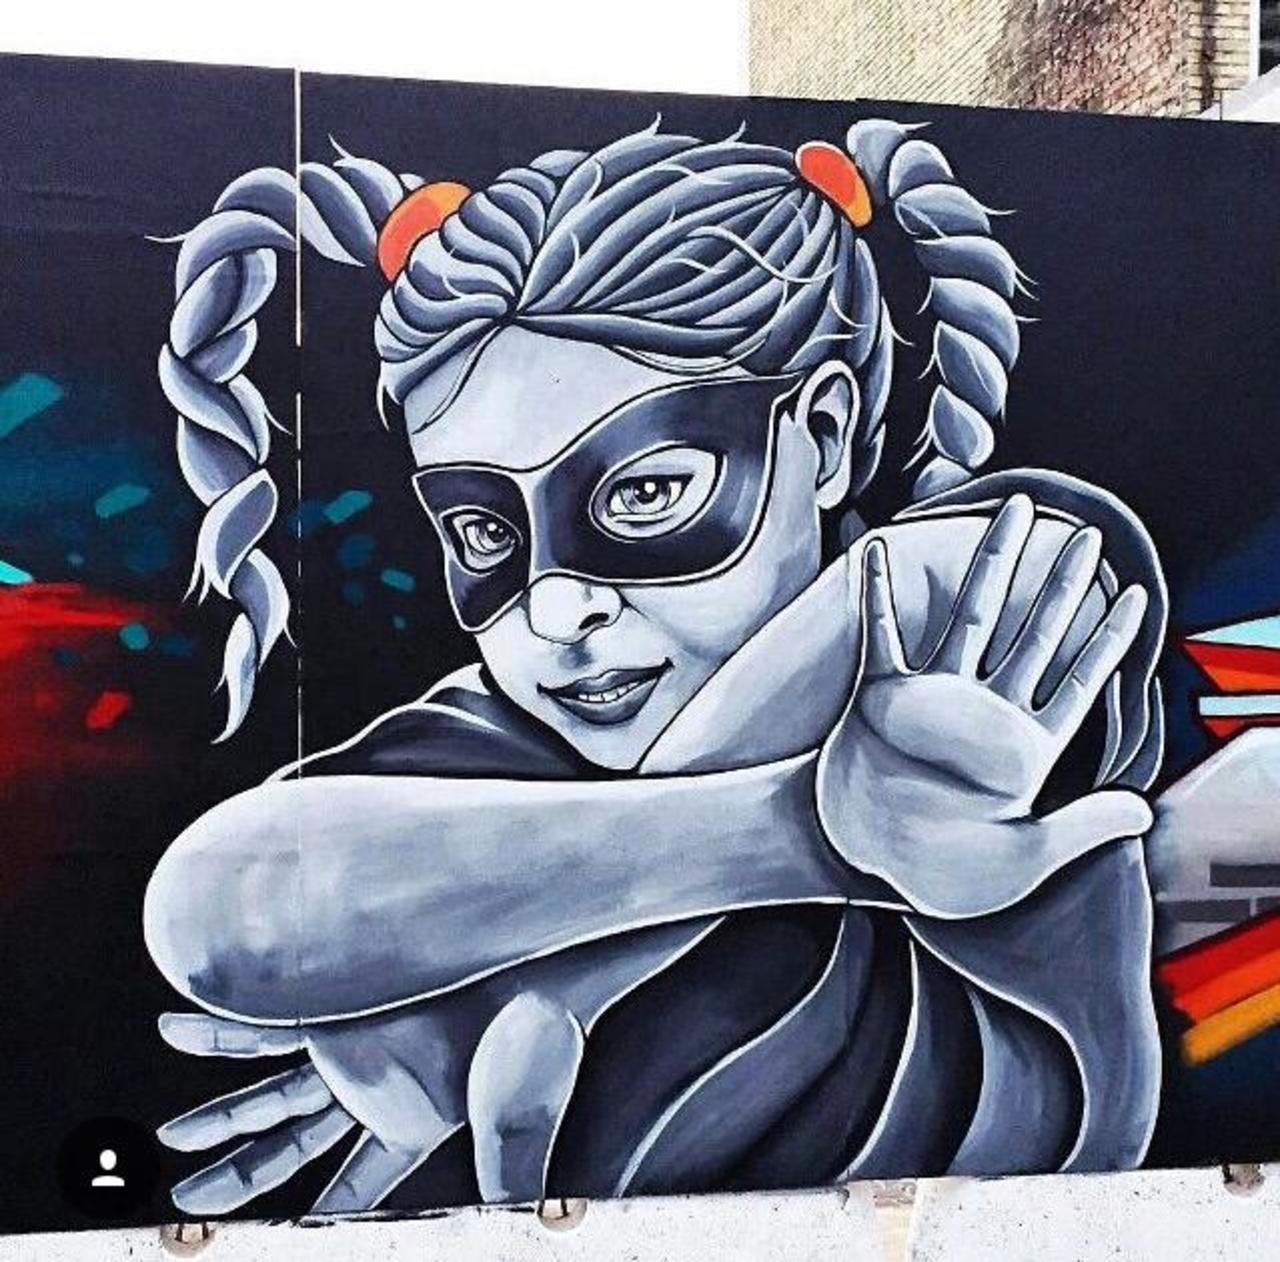 Street Art by Stinehvid 

#art #graffiti #mural #streetart http://t.co/ufC7AfTSx9